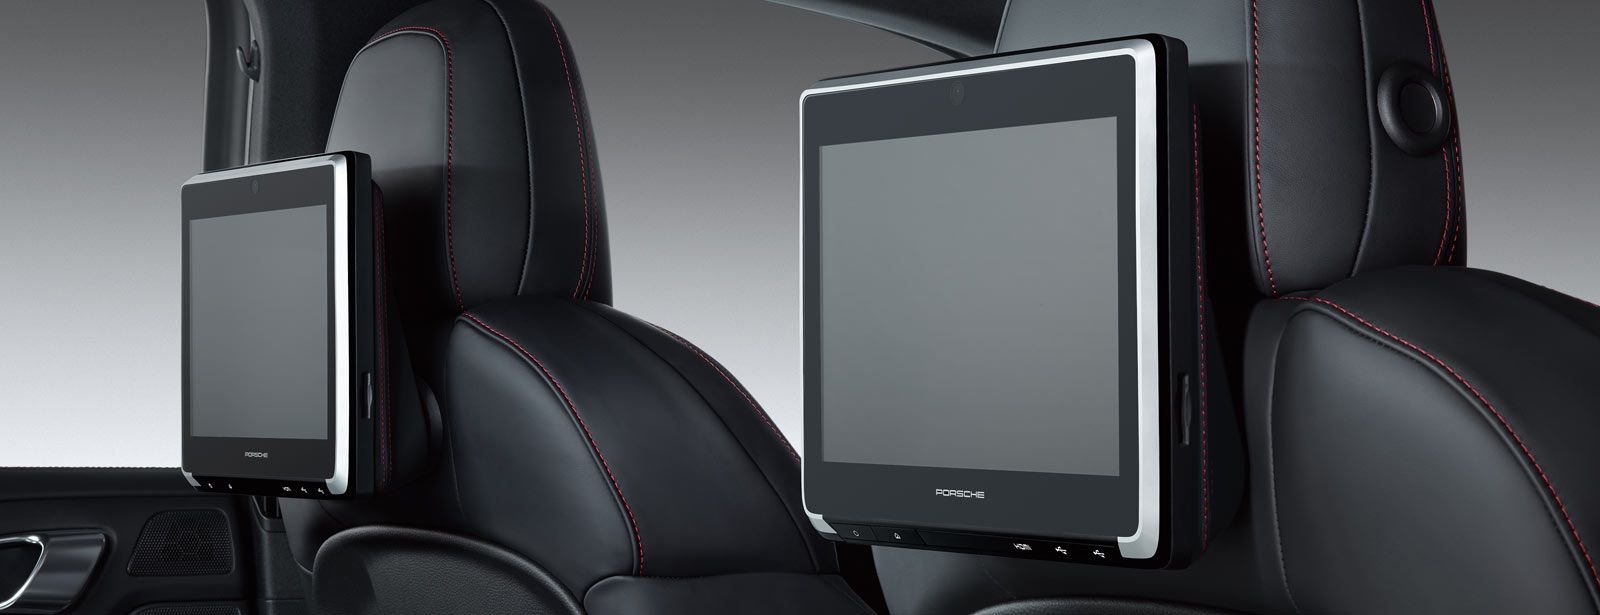 Porsche Rear Seat Entertainment Plus